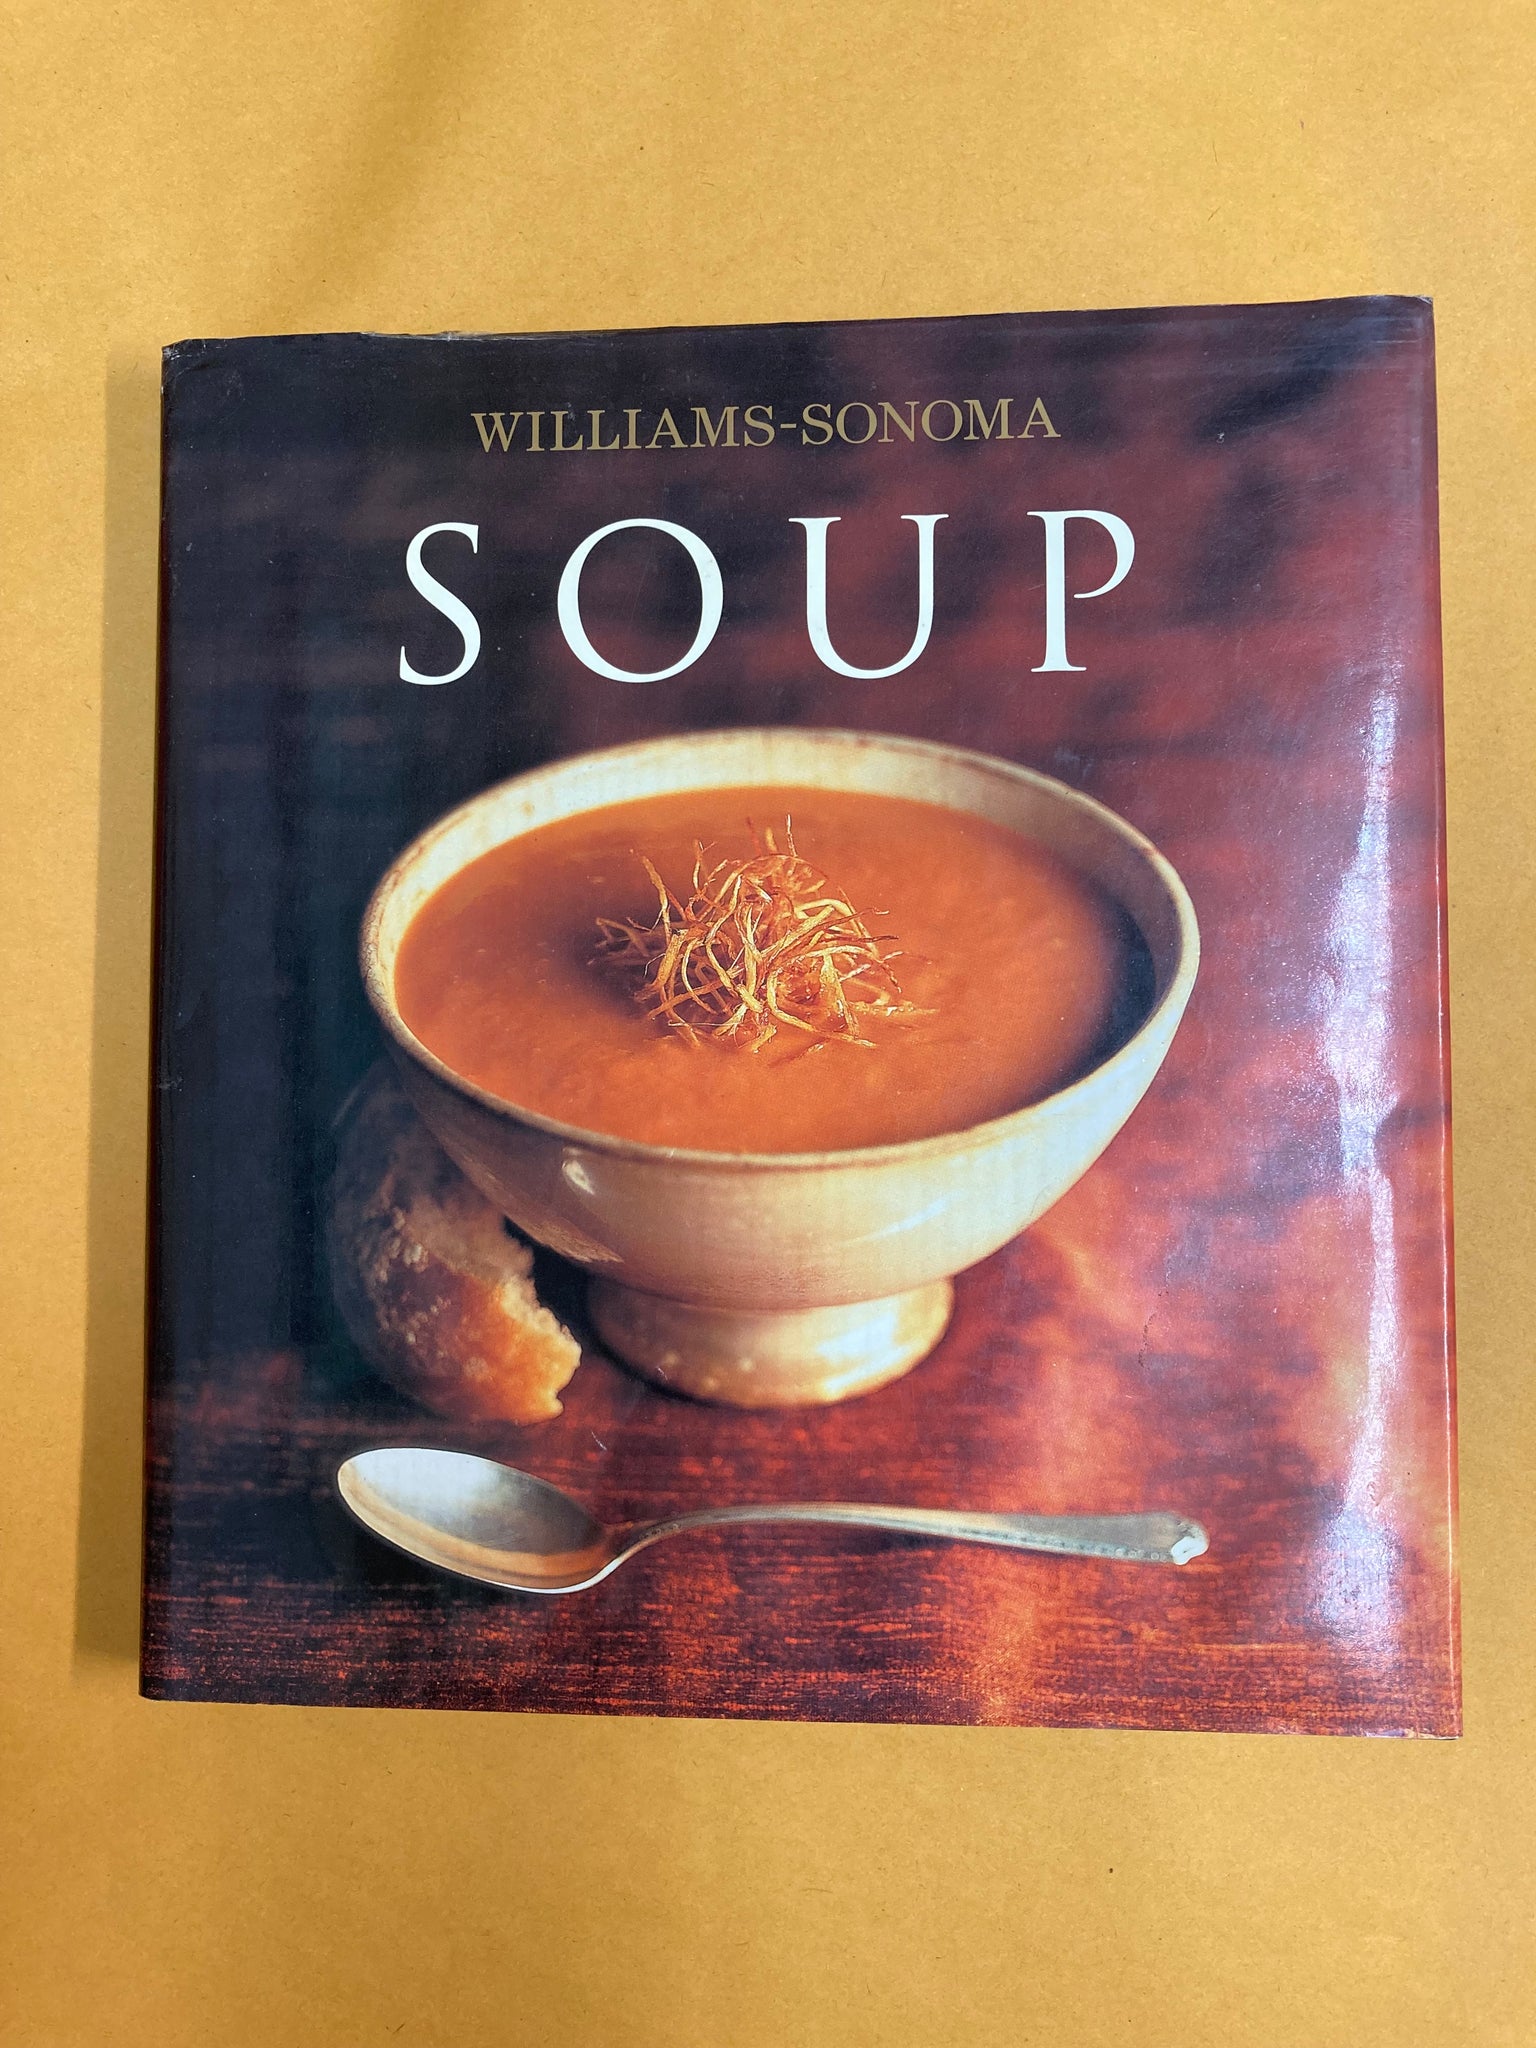 Williams-Sonoma Soup